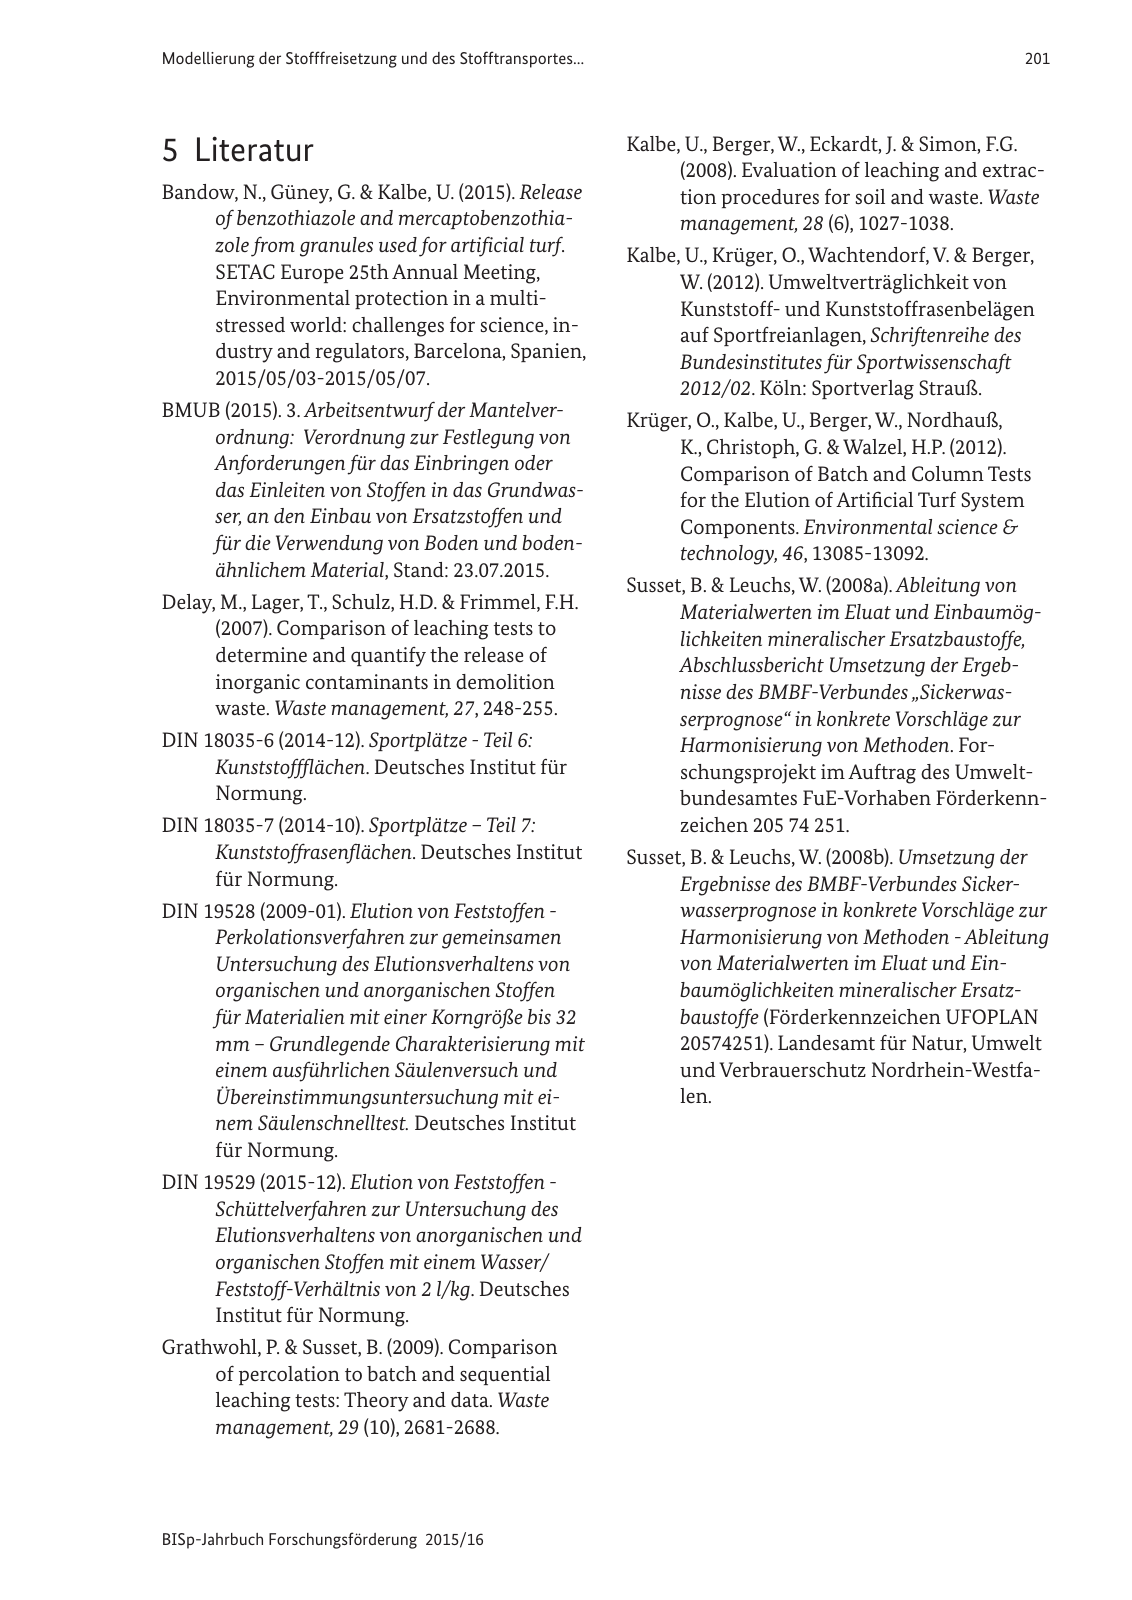 Vorschau BISp-Jahrbuch Forschungsförderung 2015/16 Seite 203